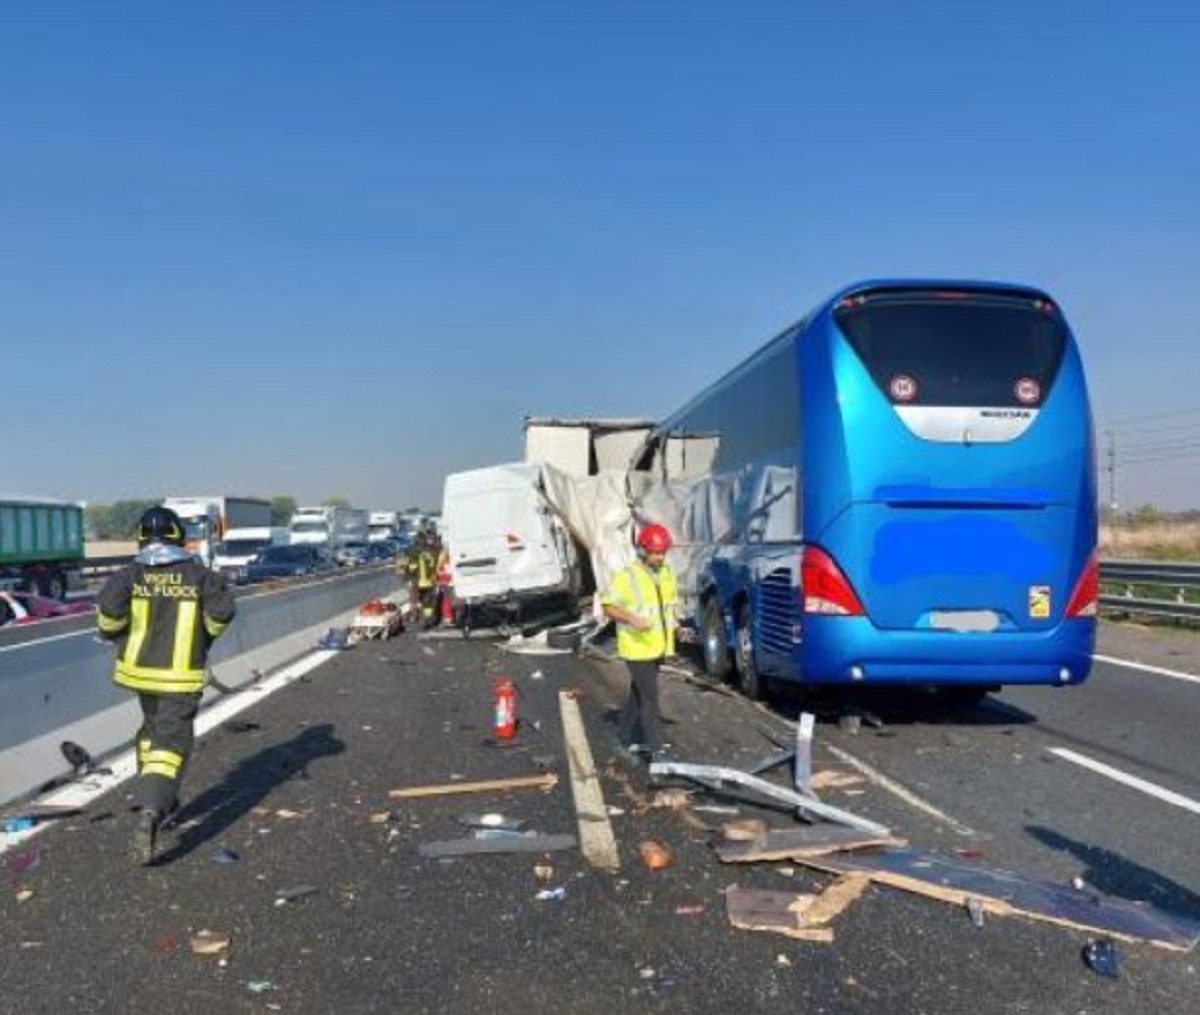 Schianto sull’autostrada A1 coinvolti tre mezzi pesanti un morto 